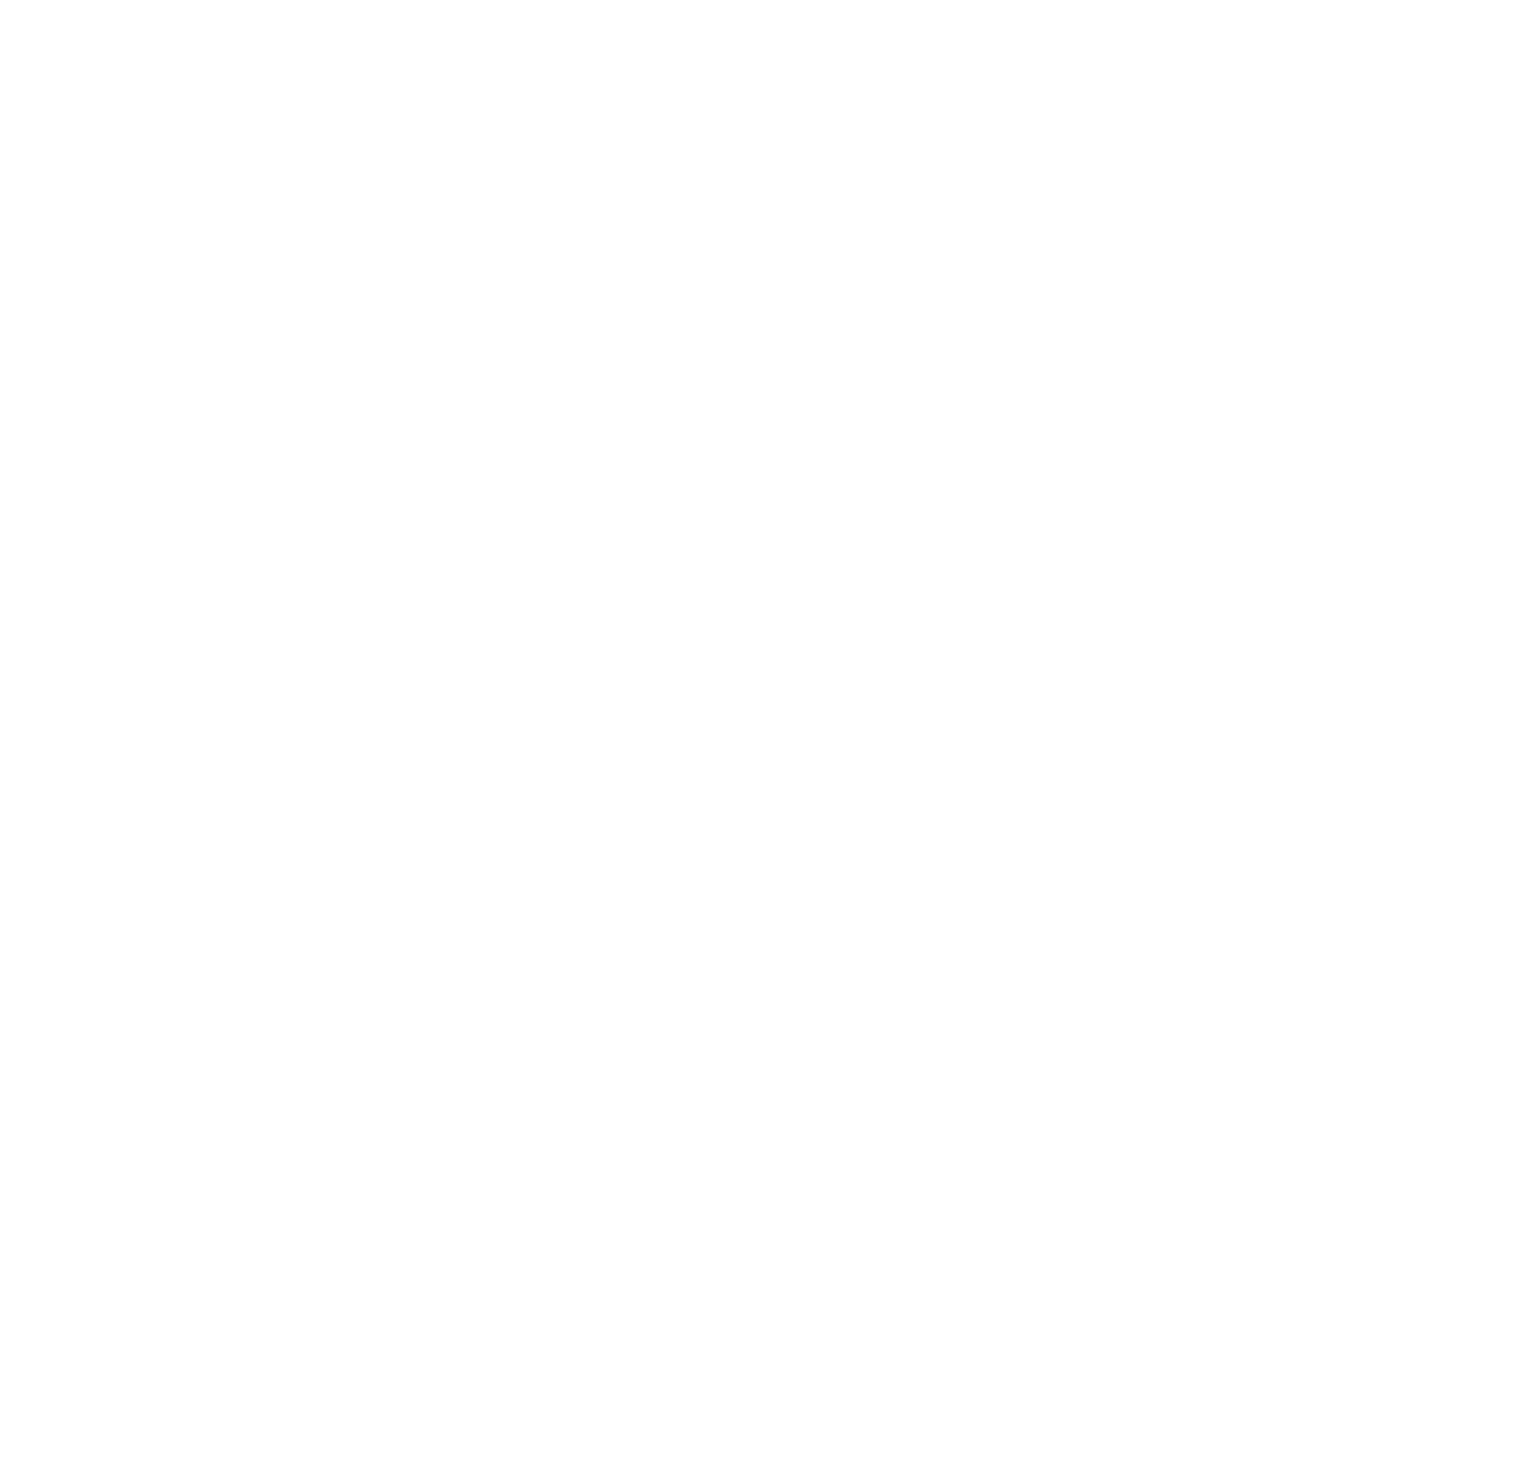 Endeavour Silver logo for dark backgrounds (transparent PNG)